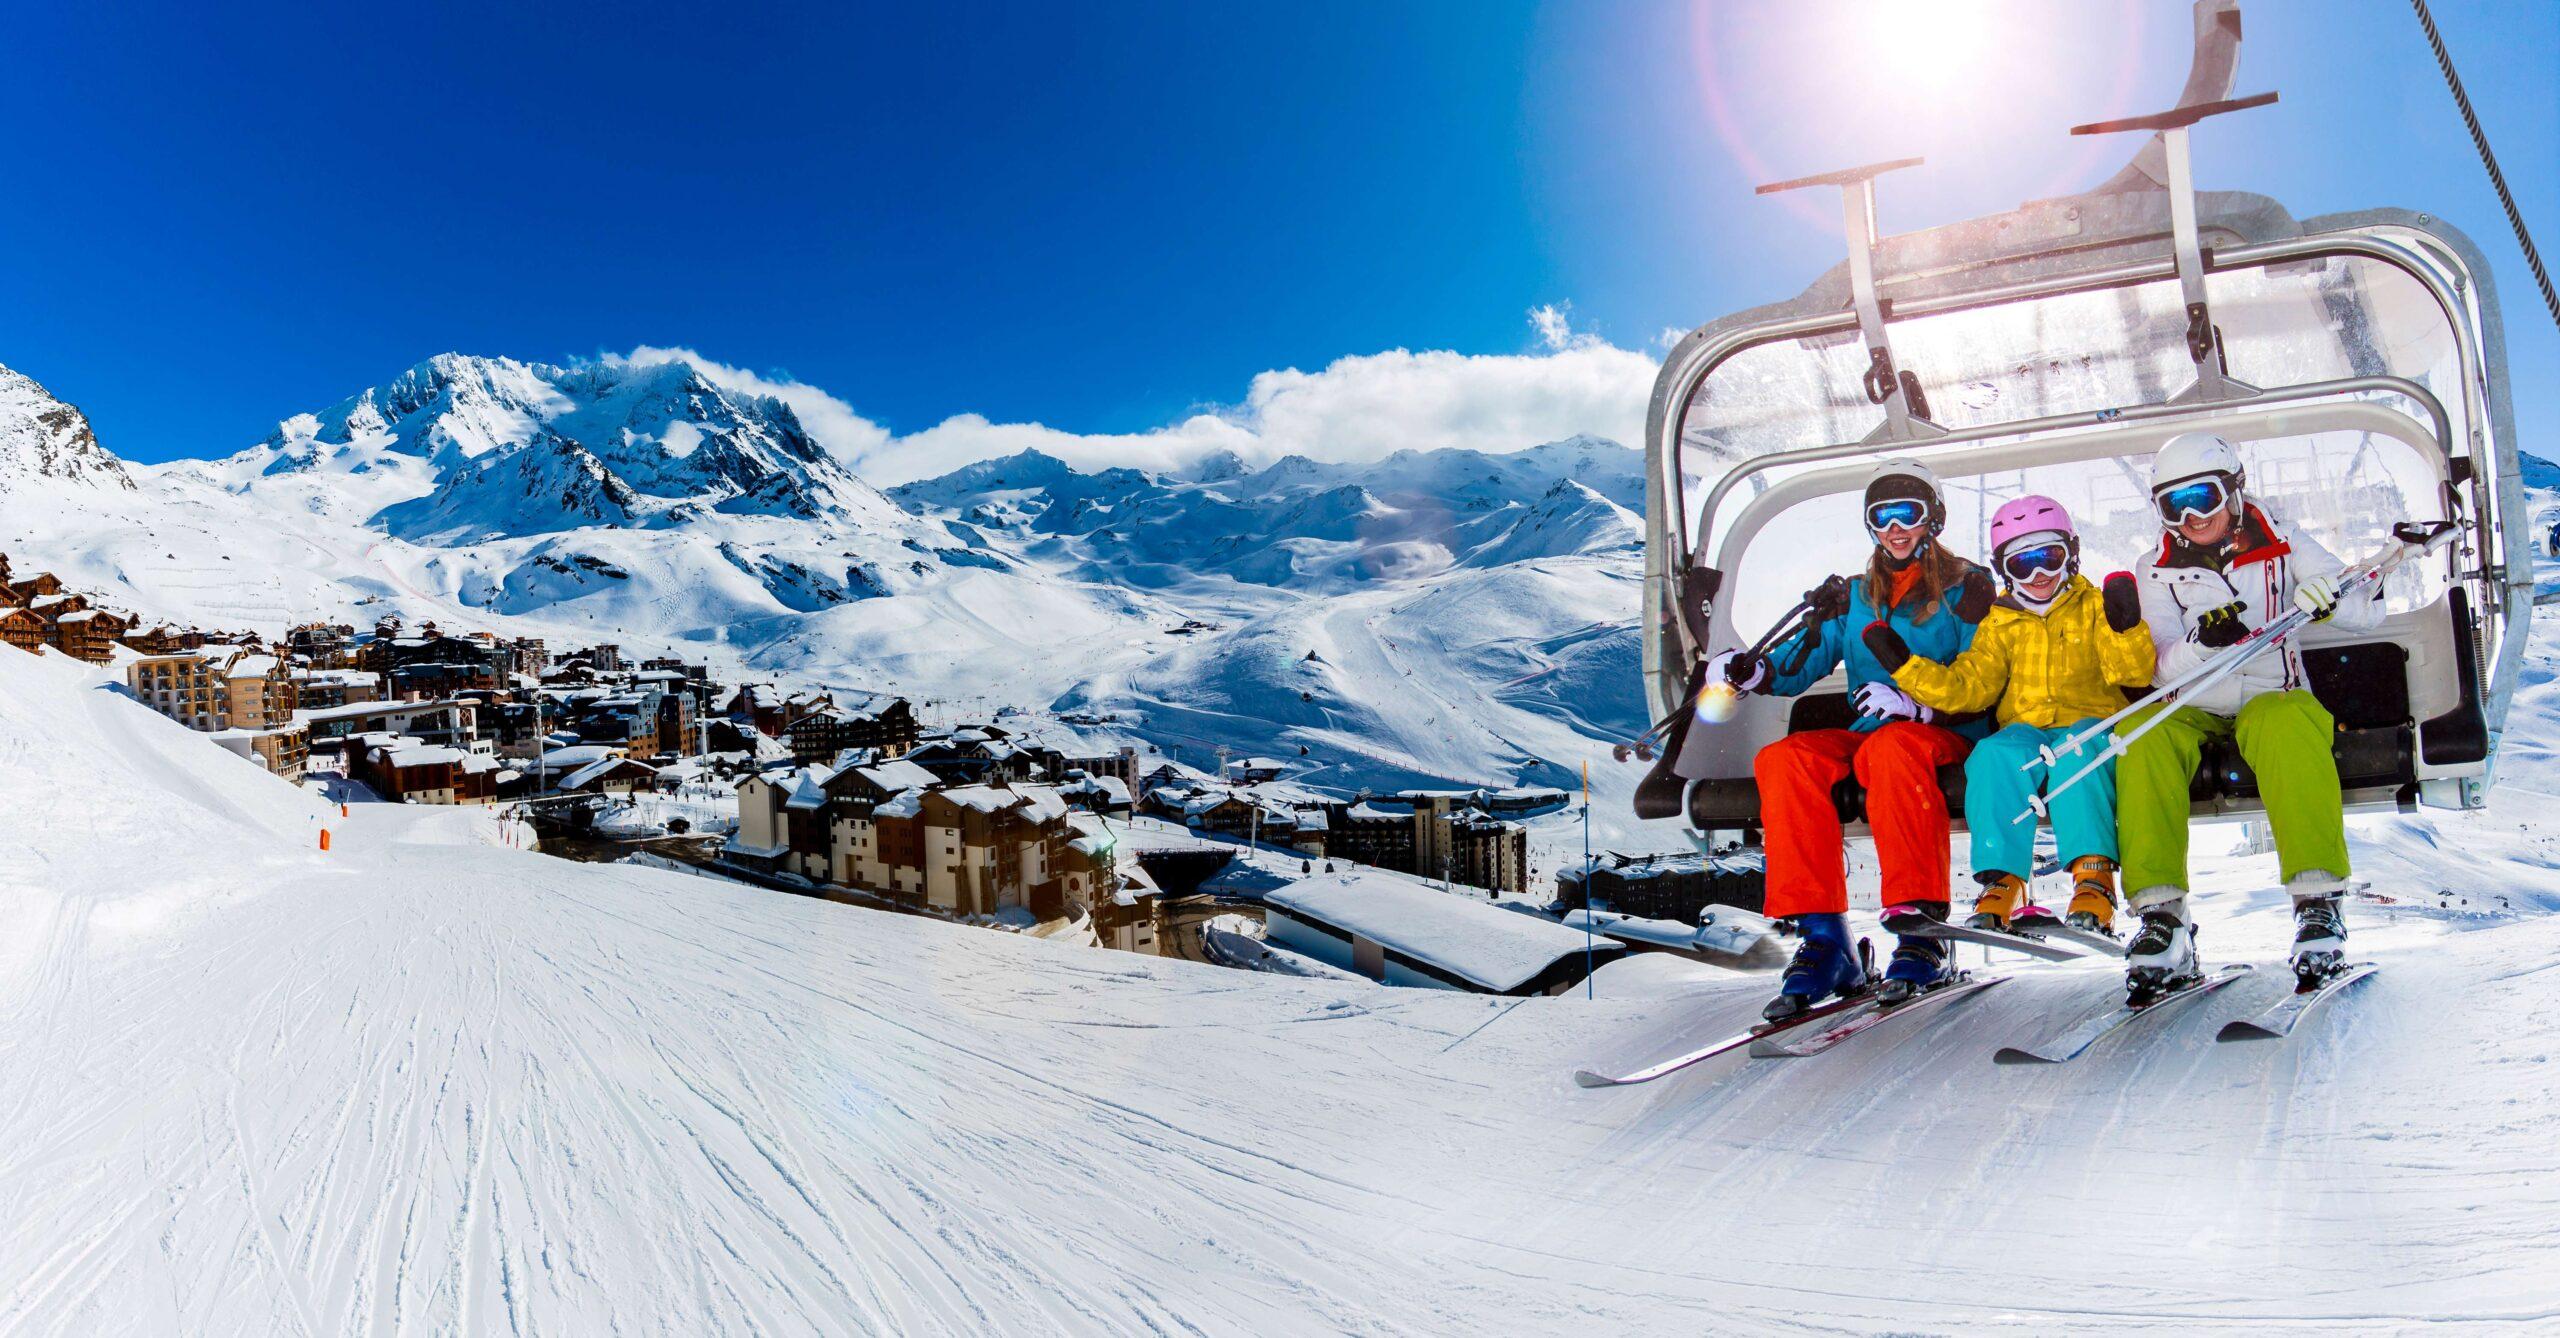 Skifahren in der Wintersaison, Berge und Skitourenausrüstung auf dem Gipfel an sonnigen Tagen in Frankreich, Alpen über den Wolken.